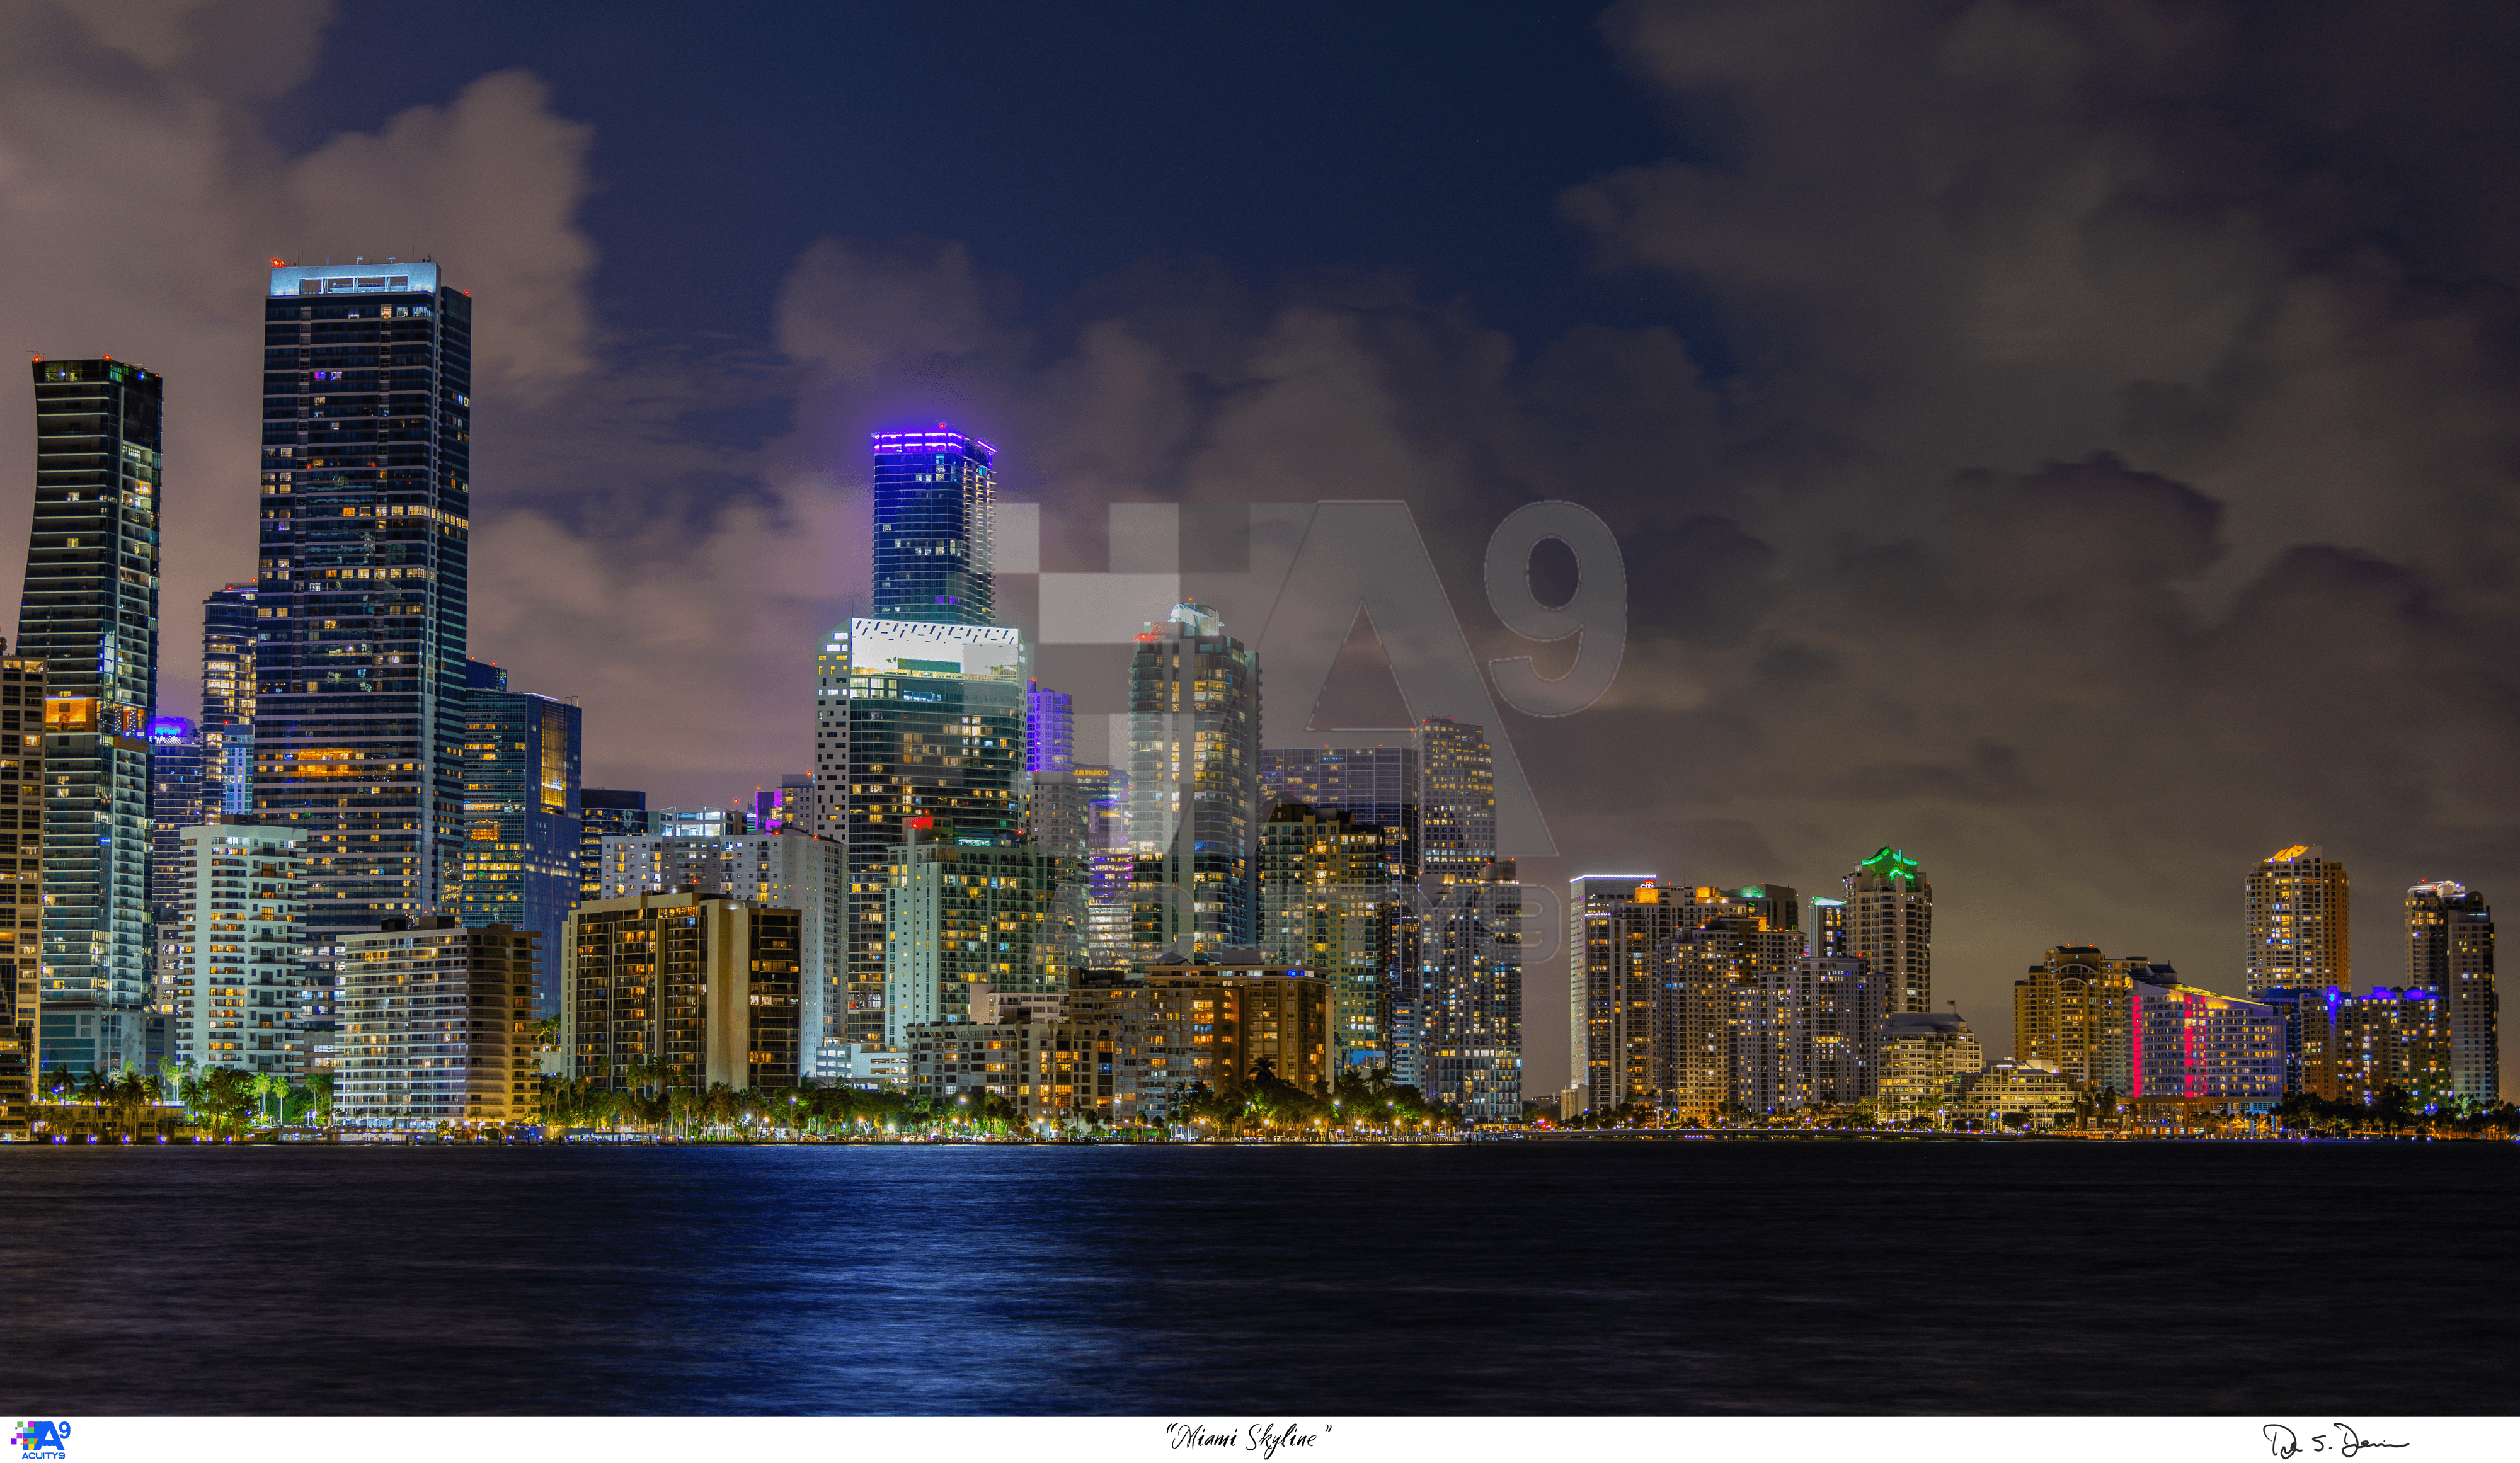 "Miami Skyline"